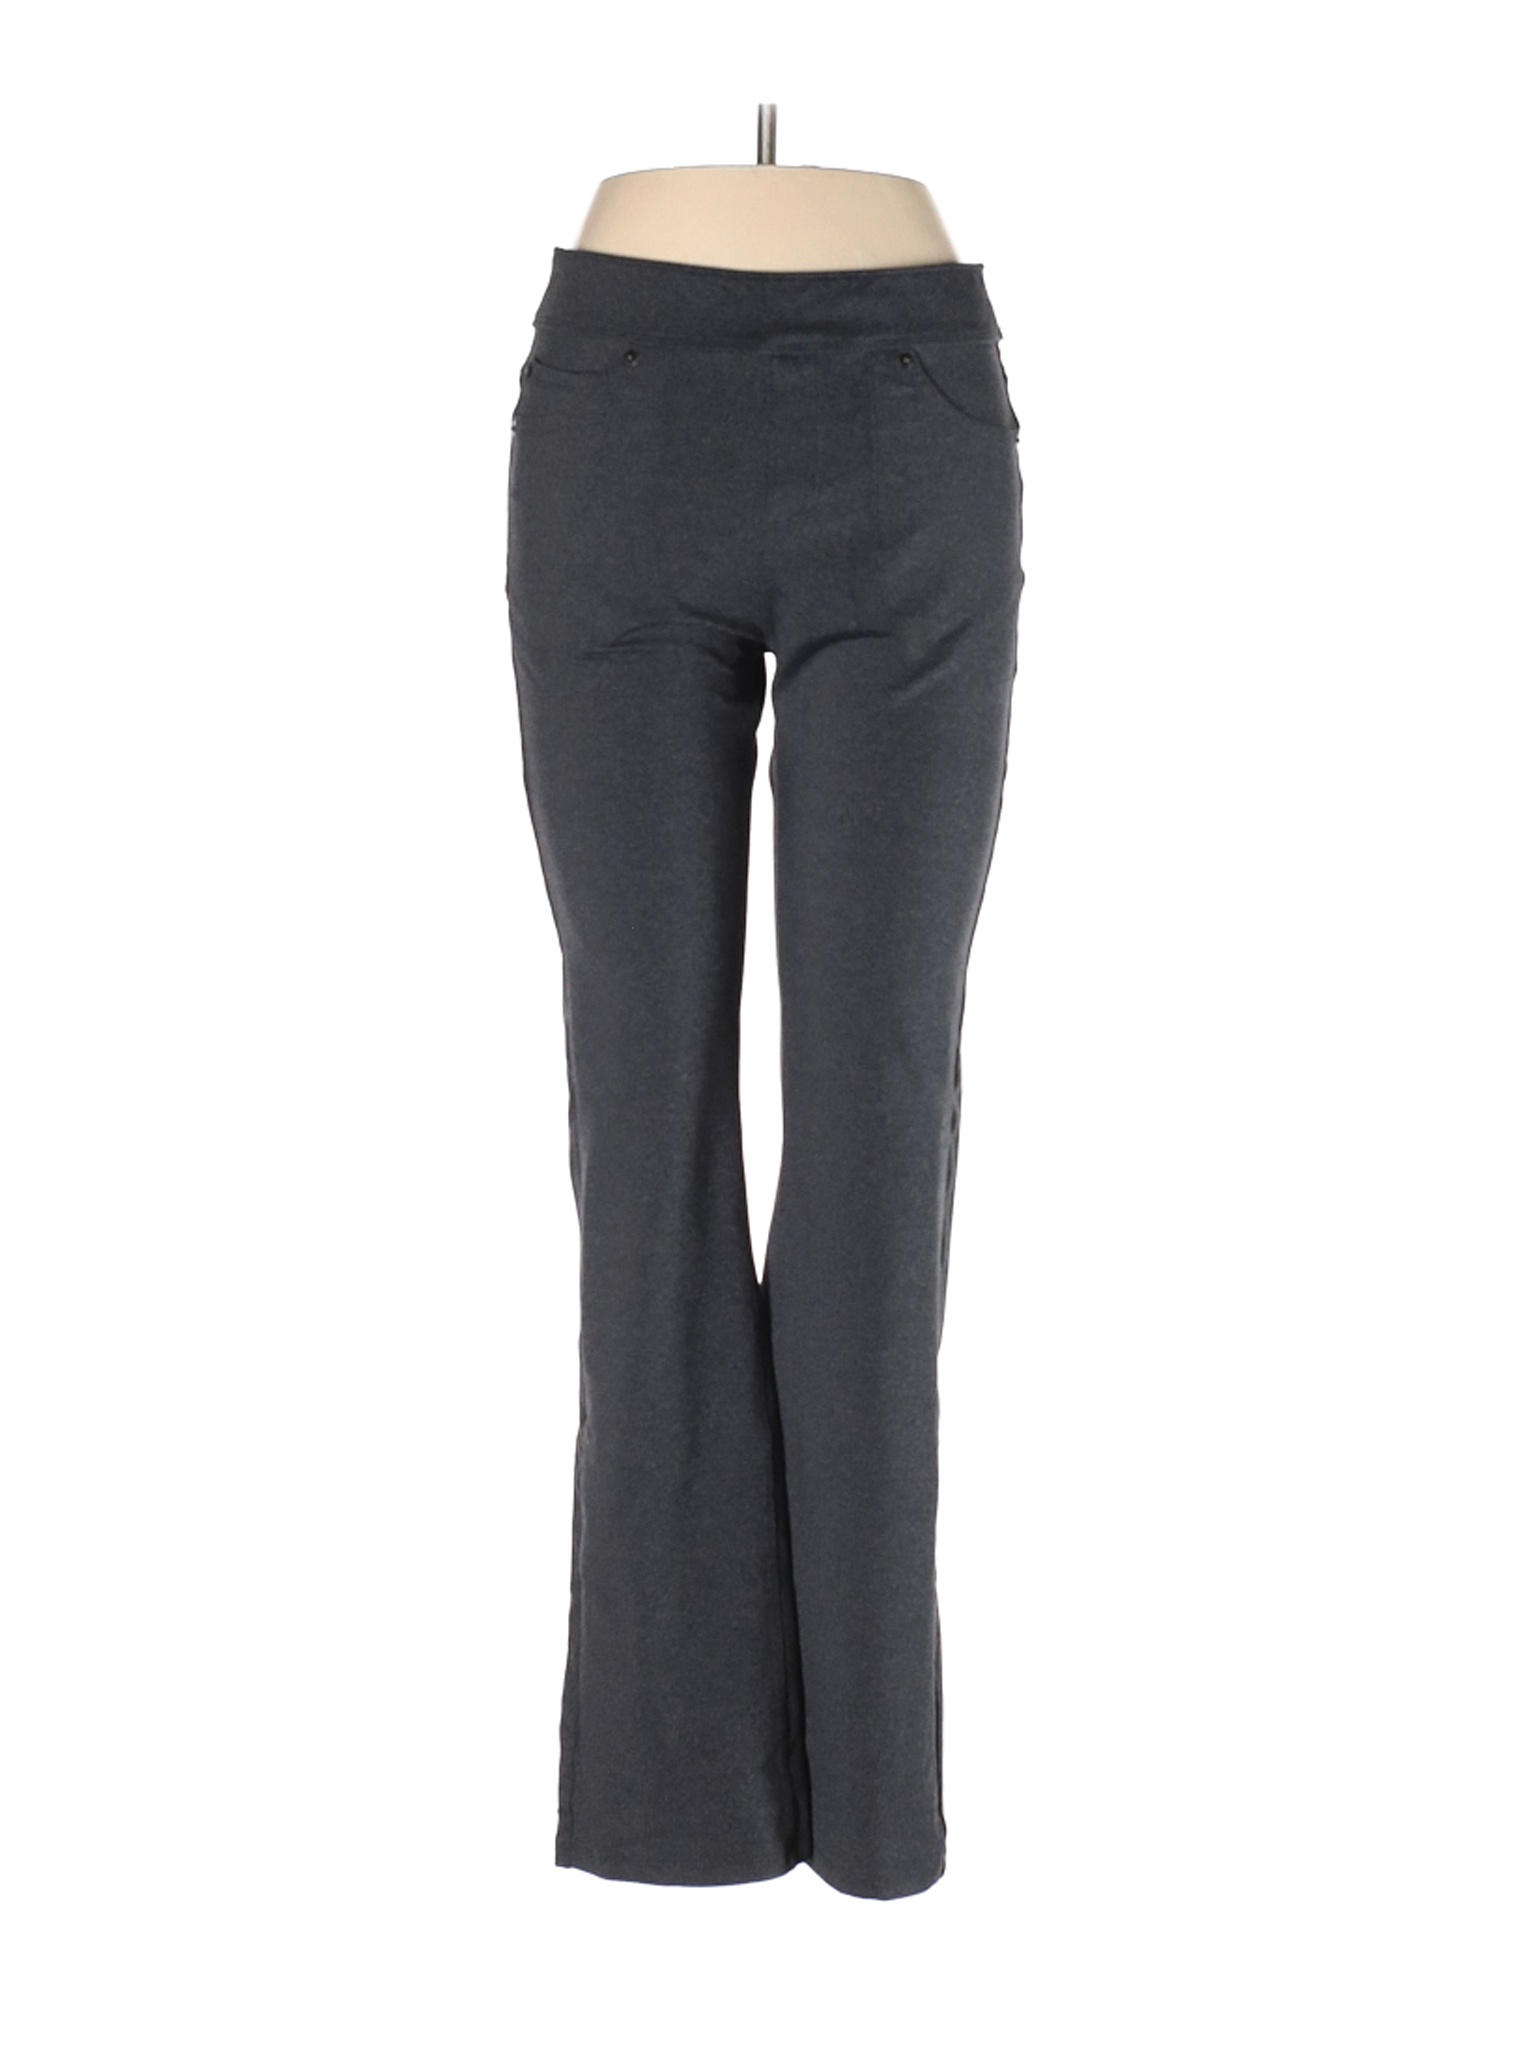 L.L.Bean Women Gray Casual Pants M | eBay